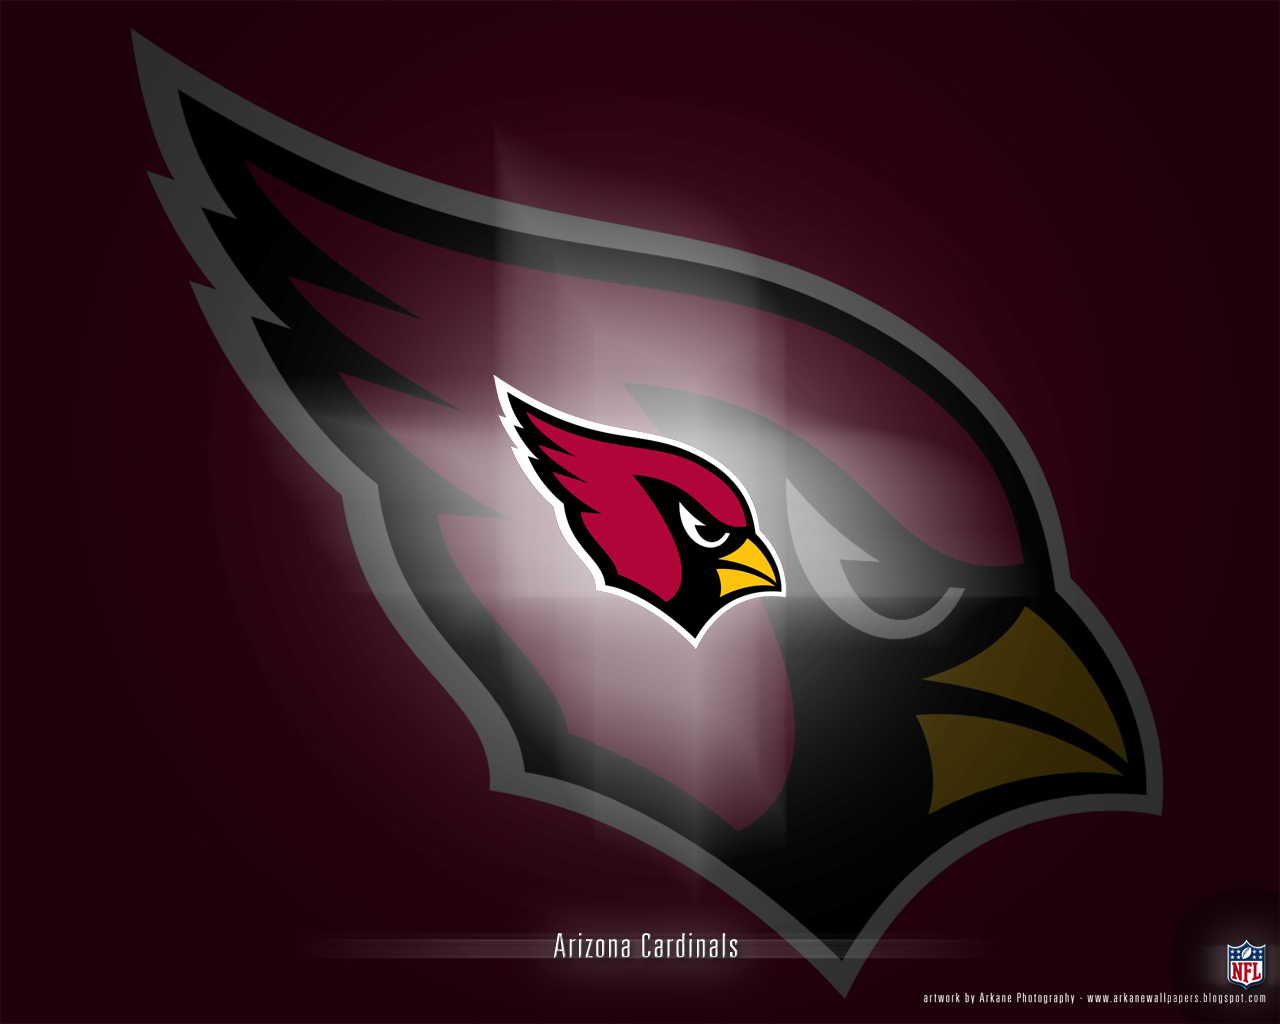 http://2.bp.blogspot.com/_JuYYGgmnUQU/SwRiOlUB2nI/AAAAAAAAAcY/Su7ulCIldQ0/s1600/Arizona+Cardinals.jpeg